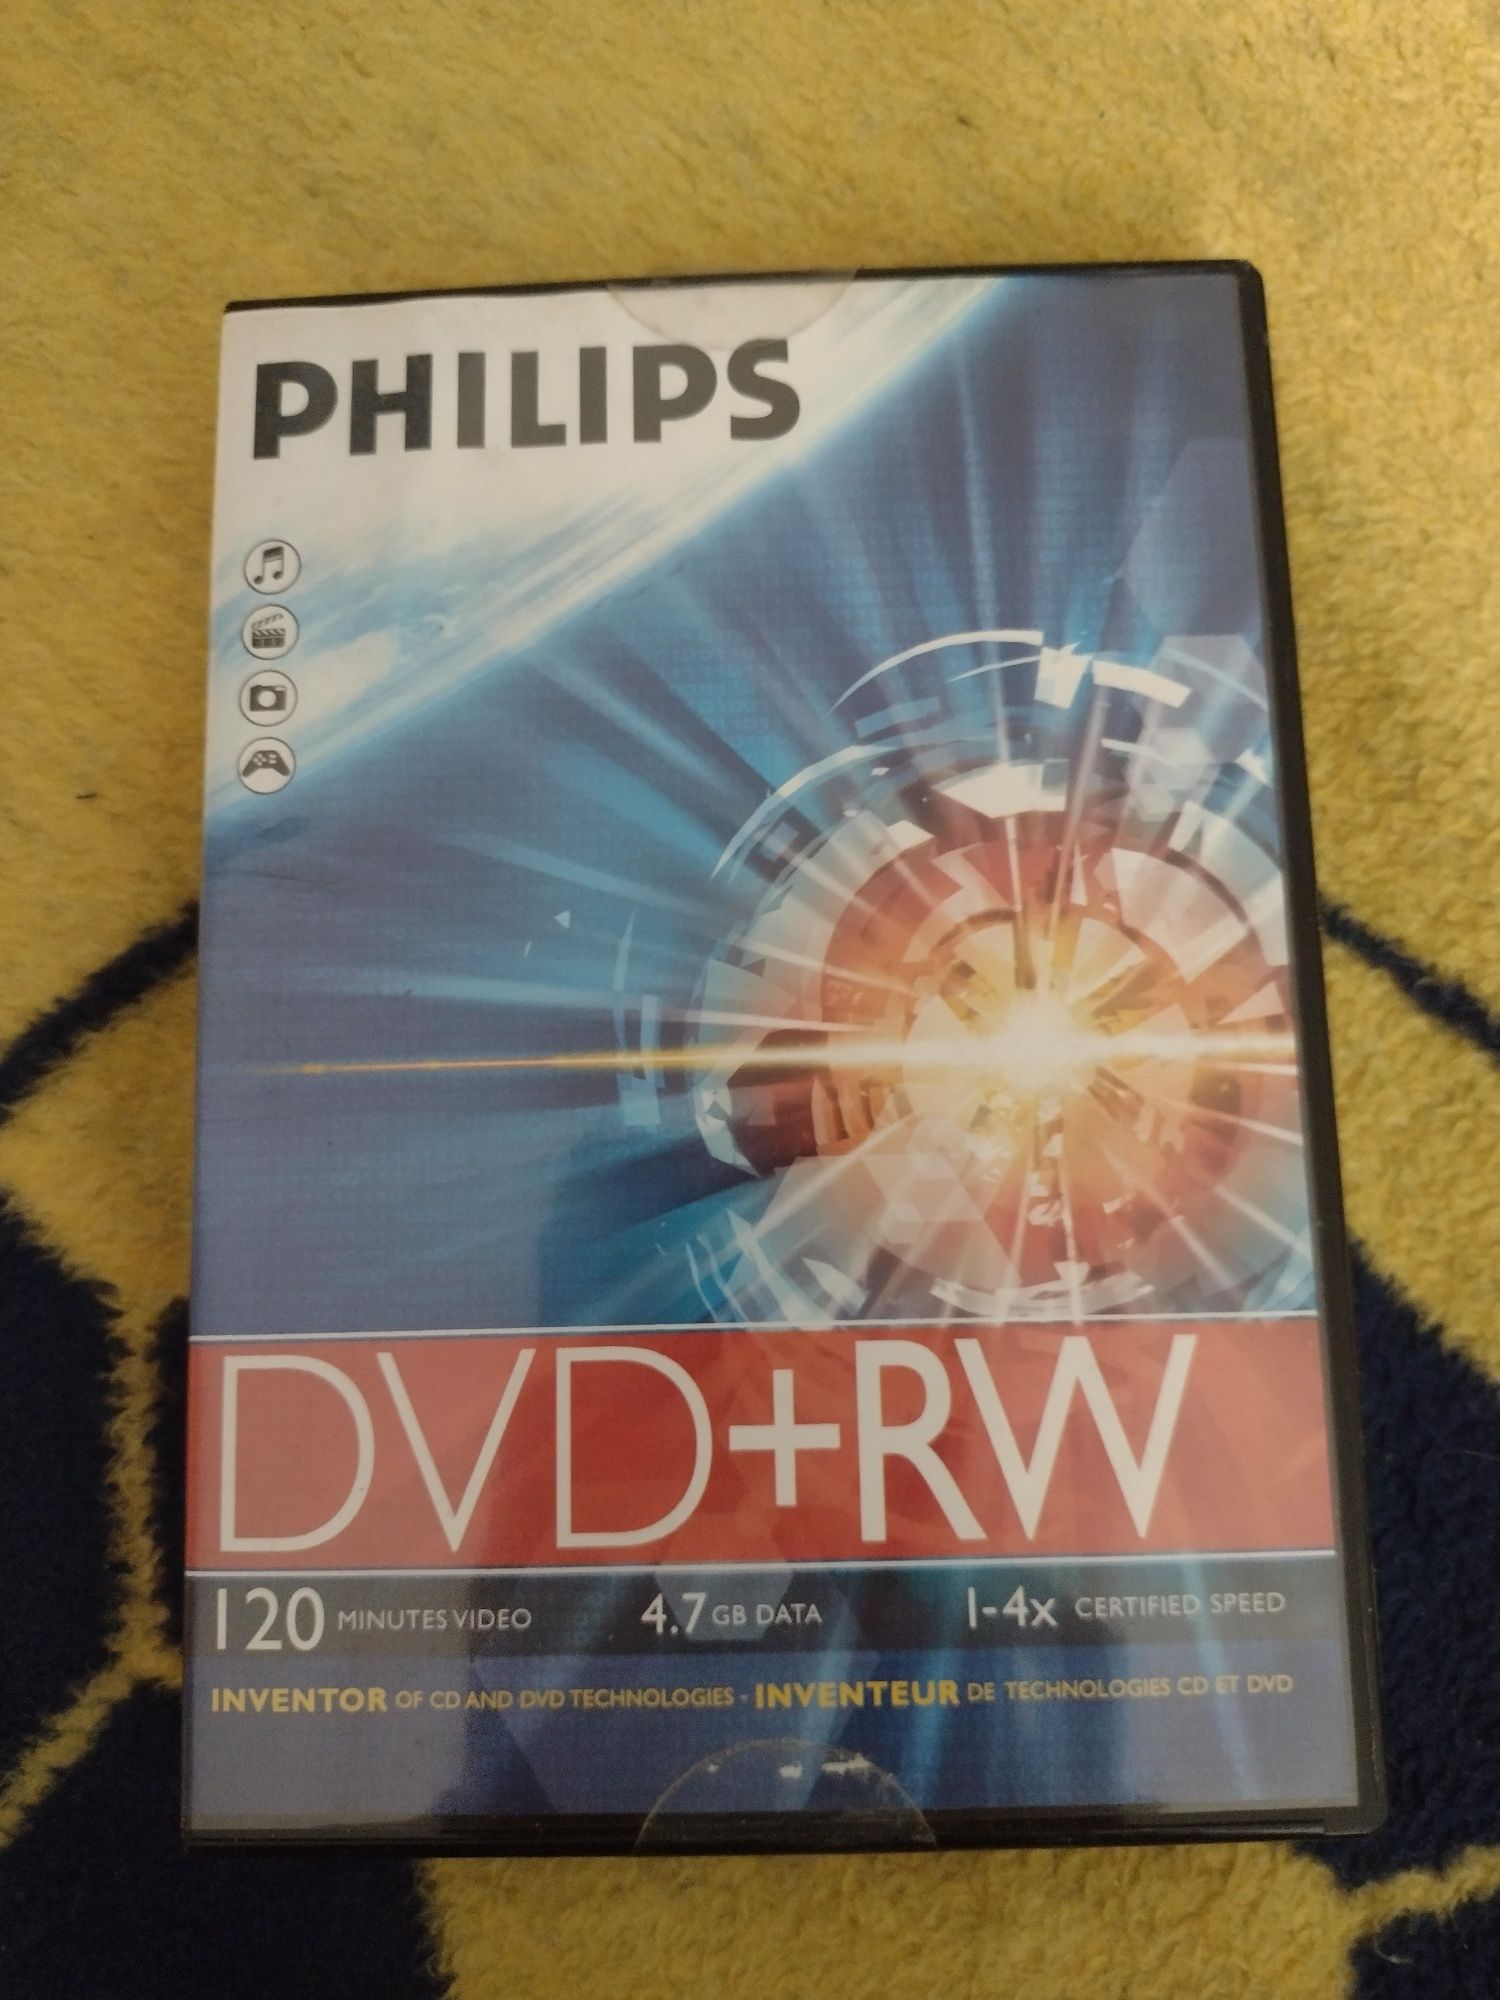 Płyty DVD+ RW Philips nowe